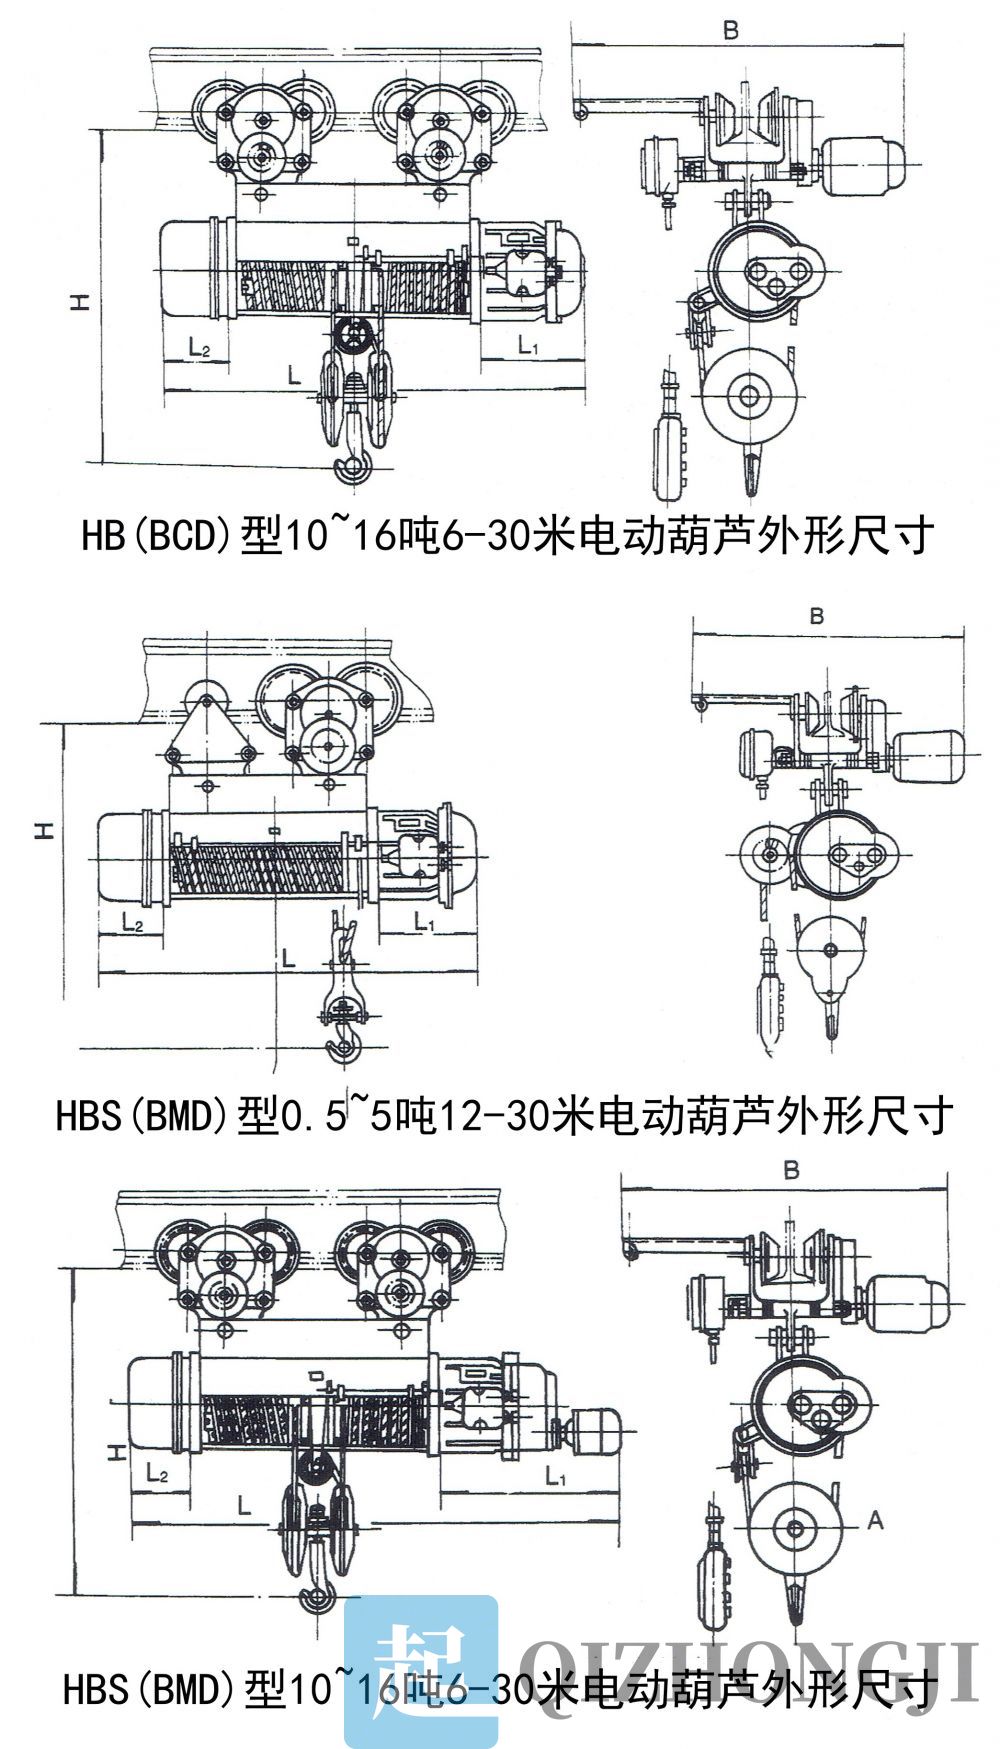 HB(BCD)、HBS(BMD)防爆型电动葫芦外形尺寸图.jpg